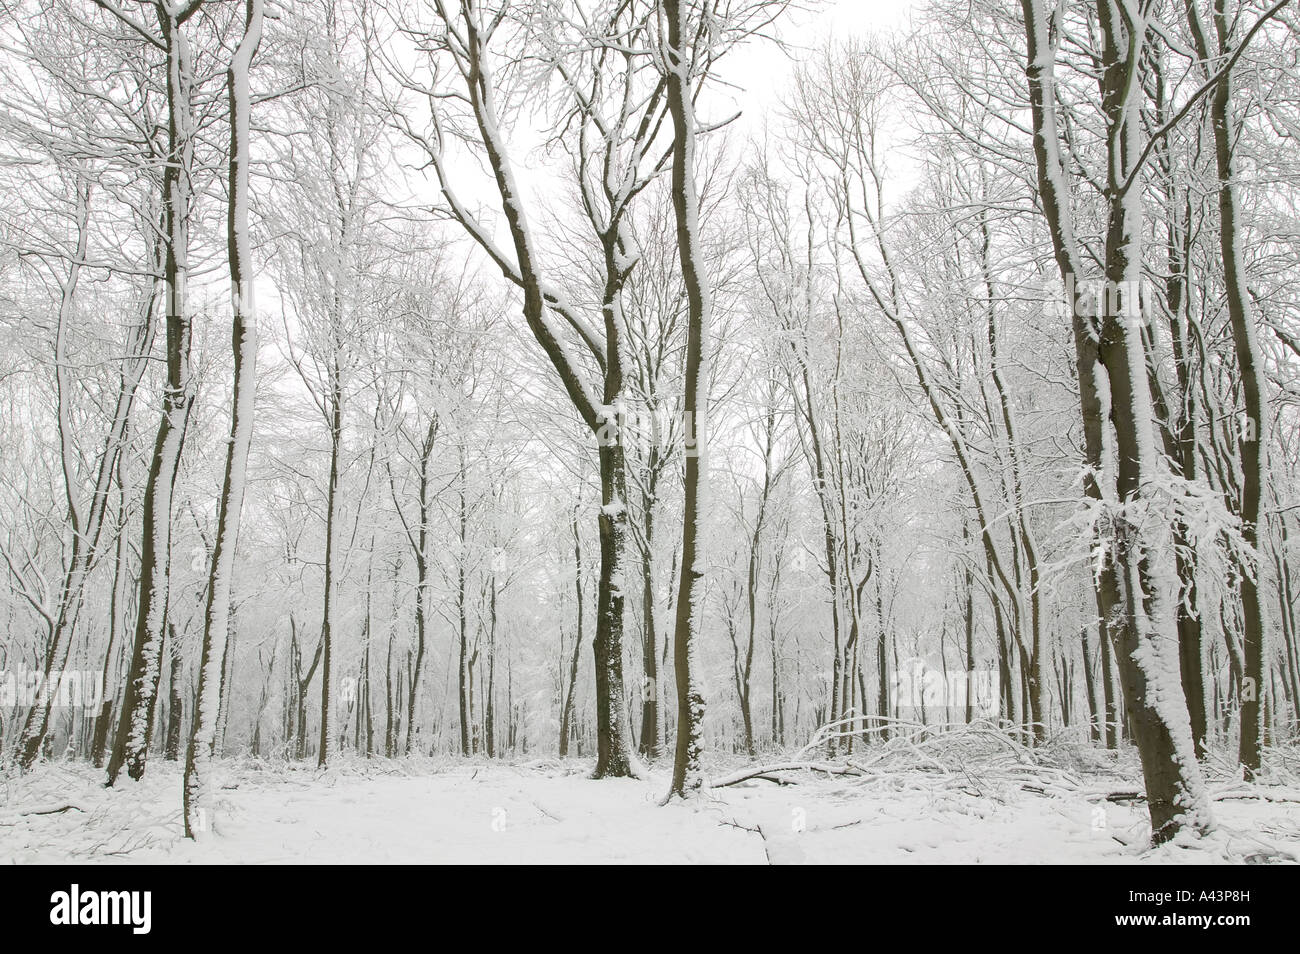 Neige scène montrant des centaines de hêtres avec leurs troncs couverts dans la neige fraîche et blanche Banque D'Images